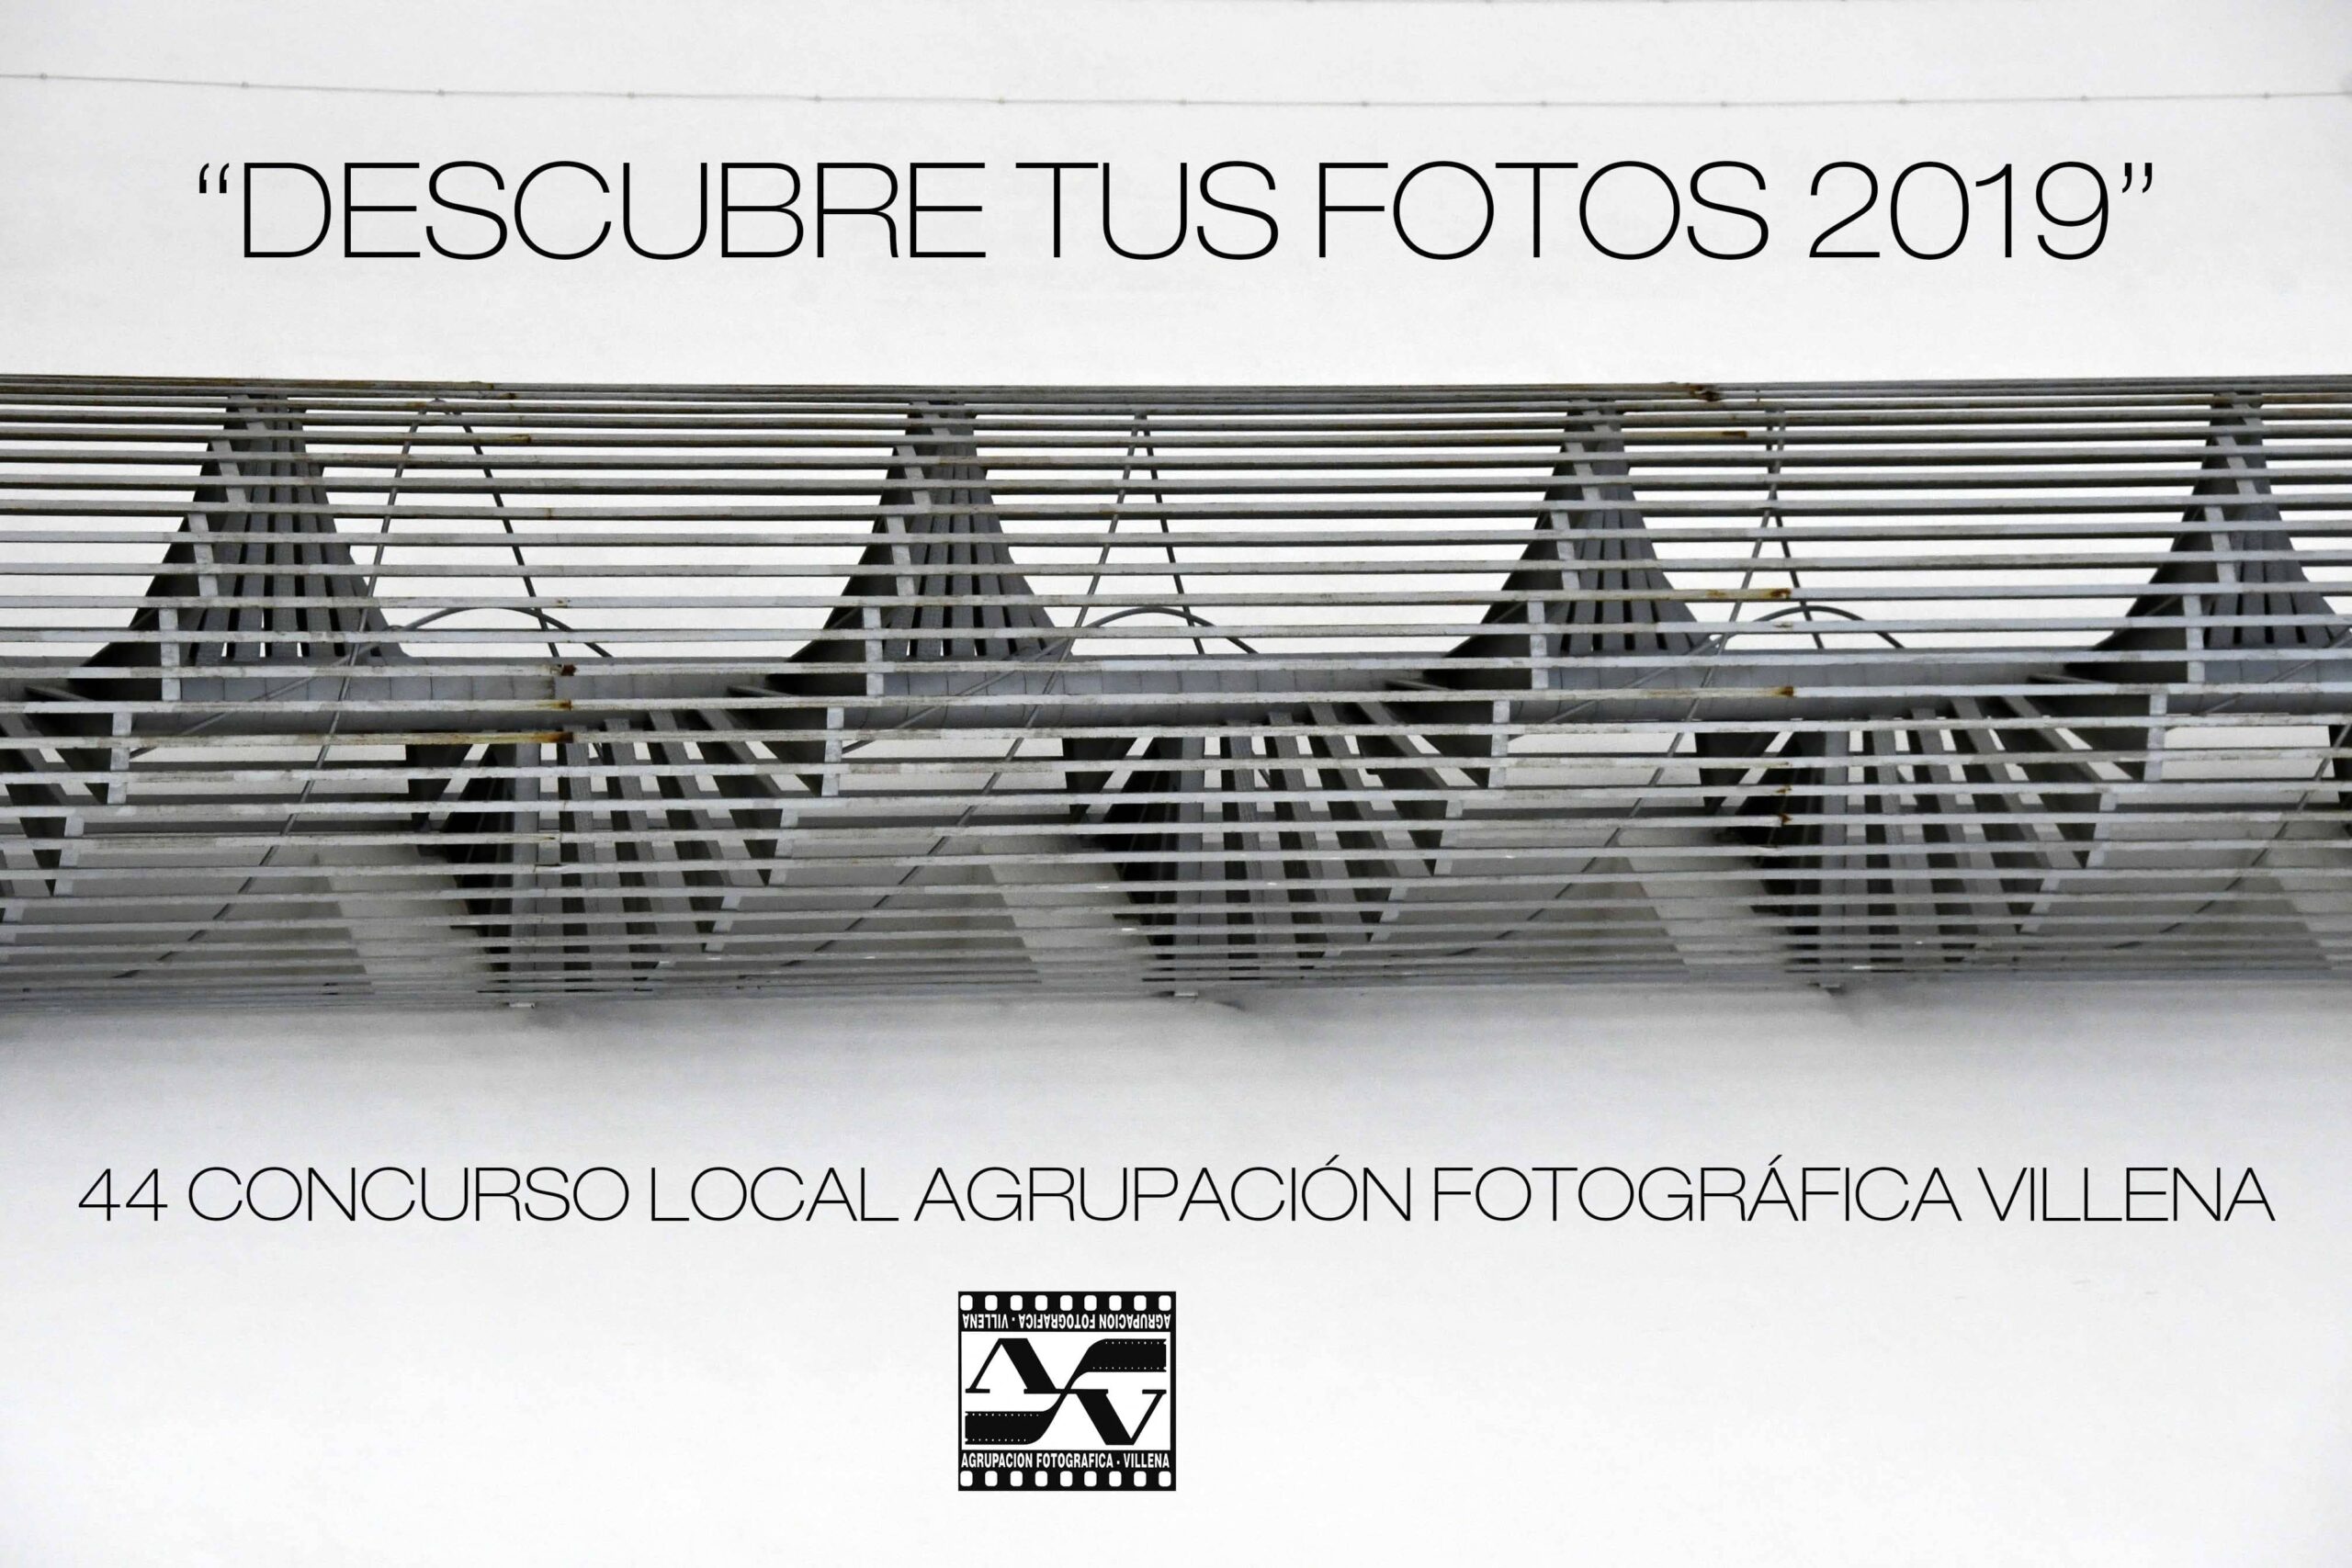 La Agrupación Fotográfica Villena presenta las bases del concurso local “Descubre tus fotos”